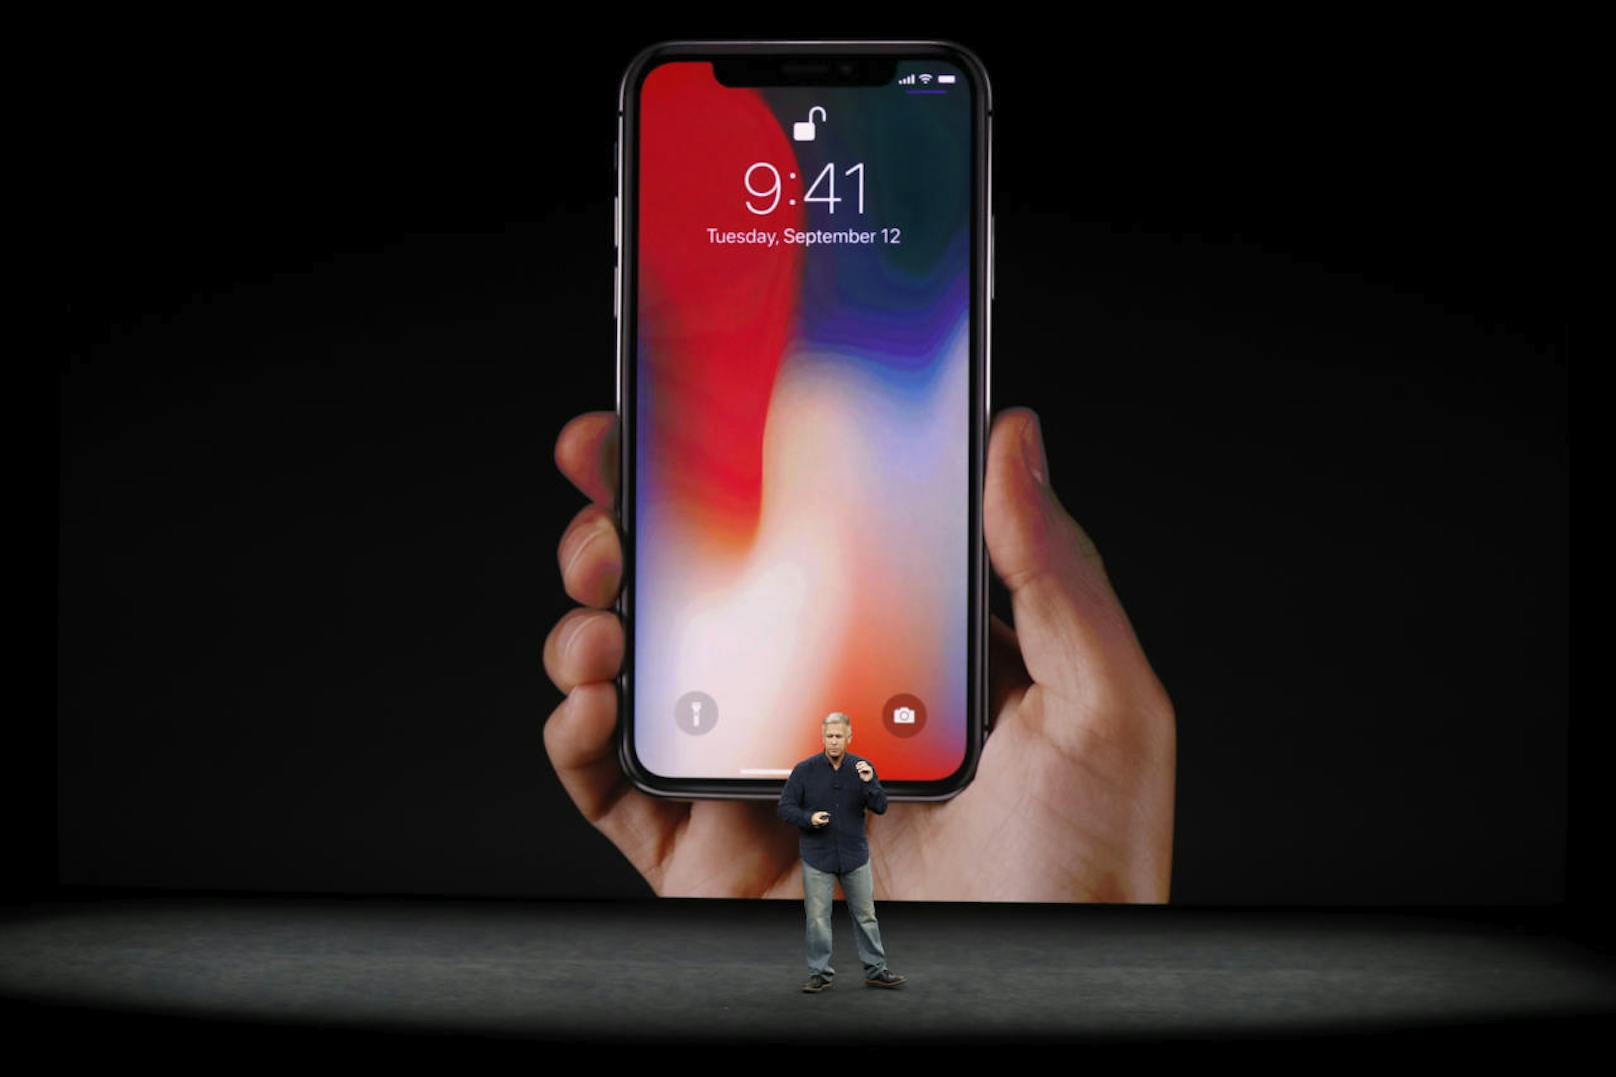 Das dritte präsentierte iPhone wird iPhone X heißen. Wie die Gerüchteküche vermutete wird das X keinen Homebutton mehr haben.